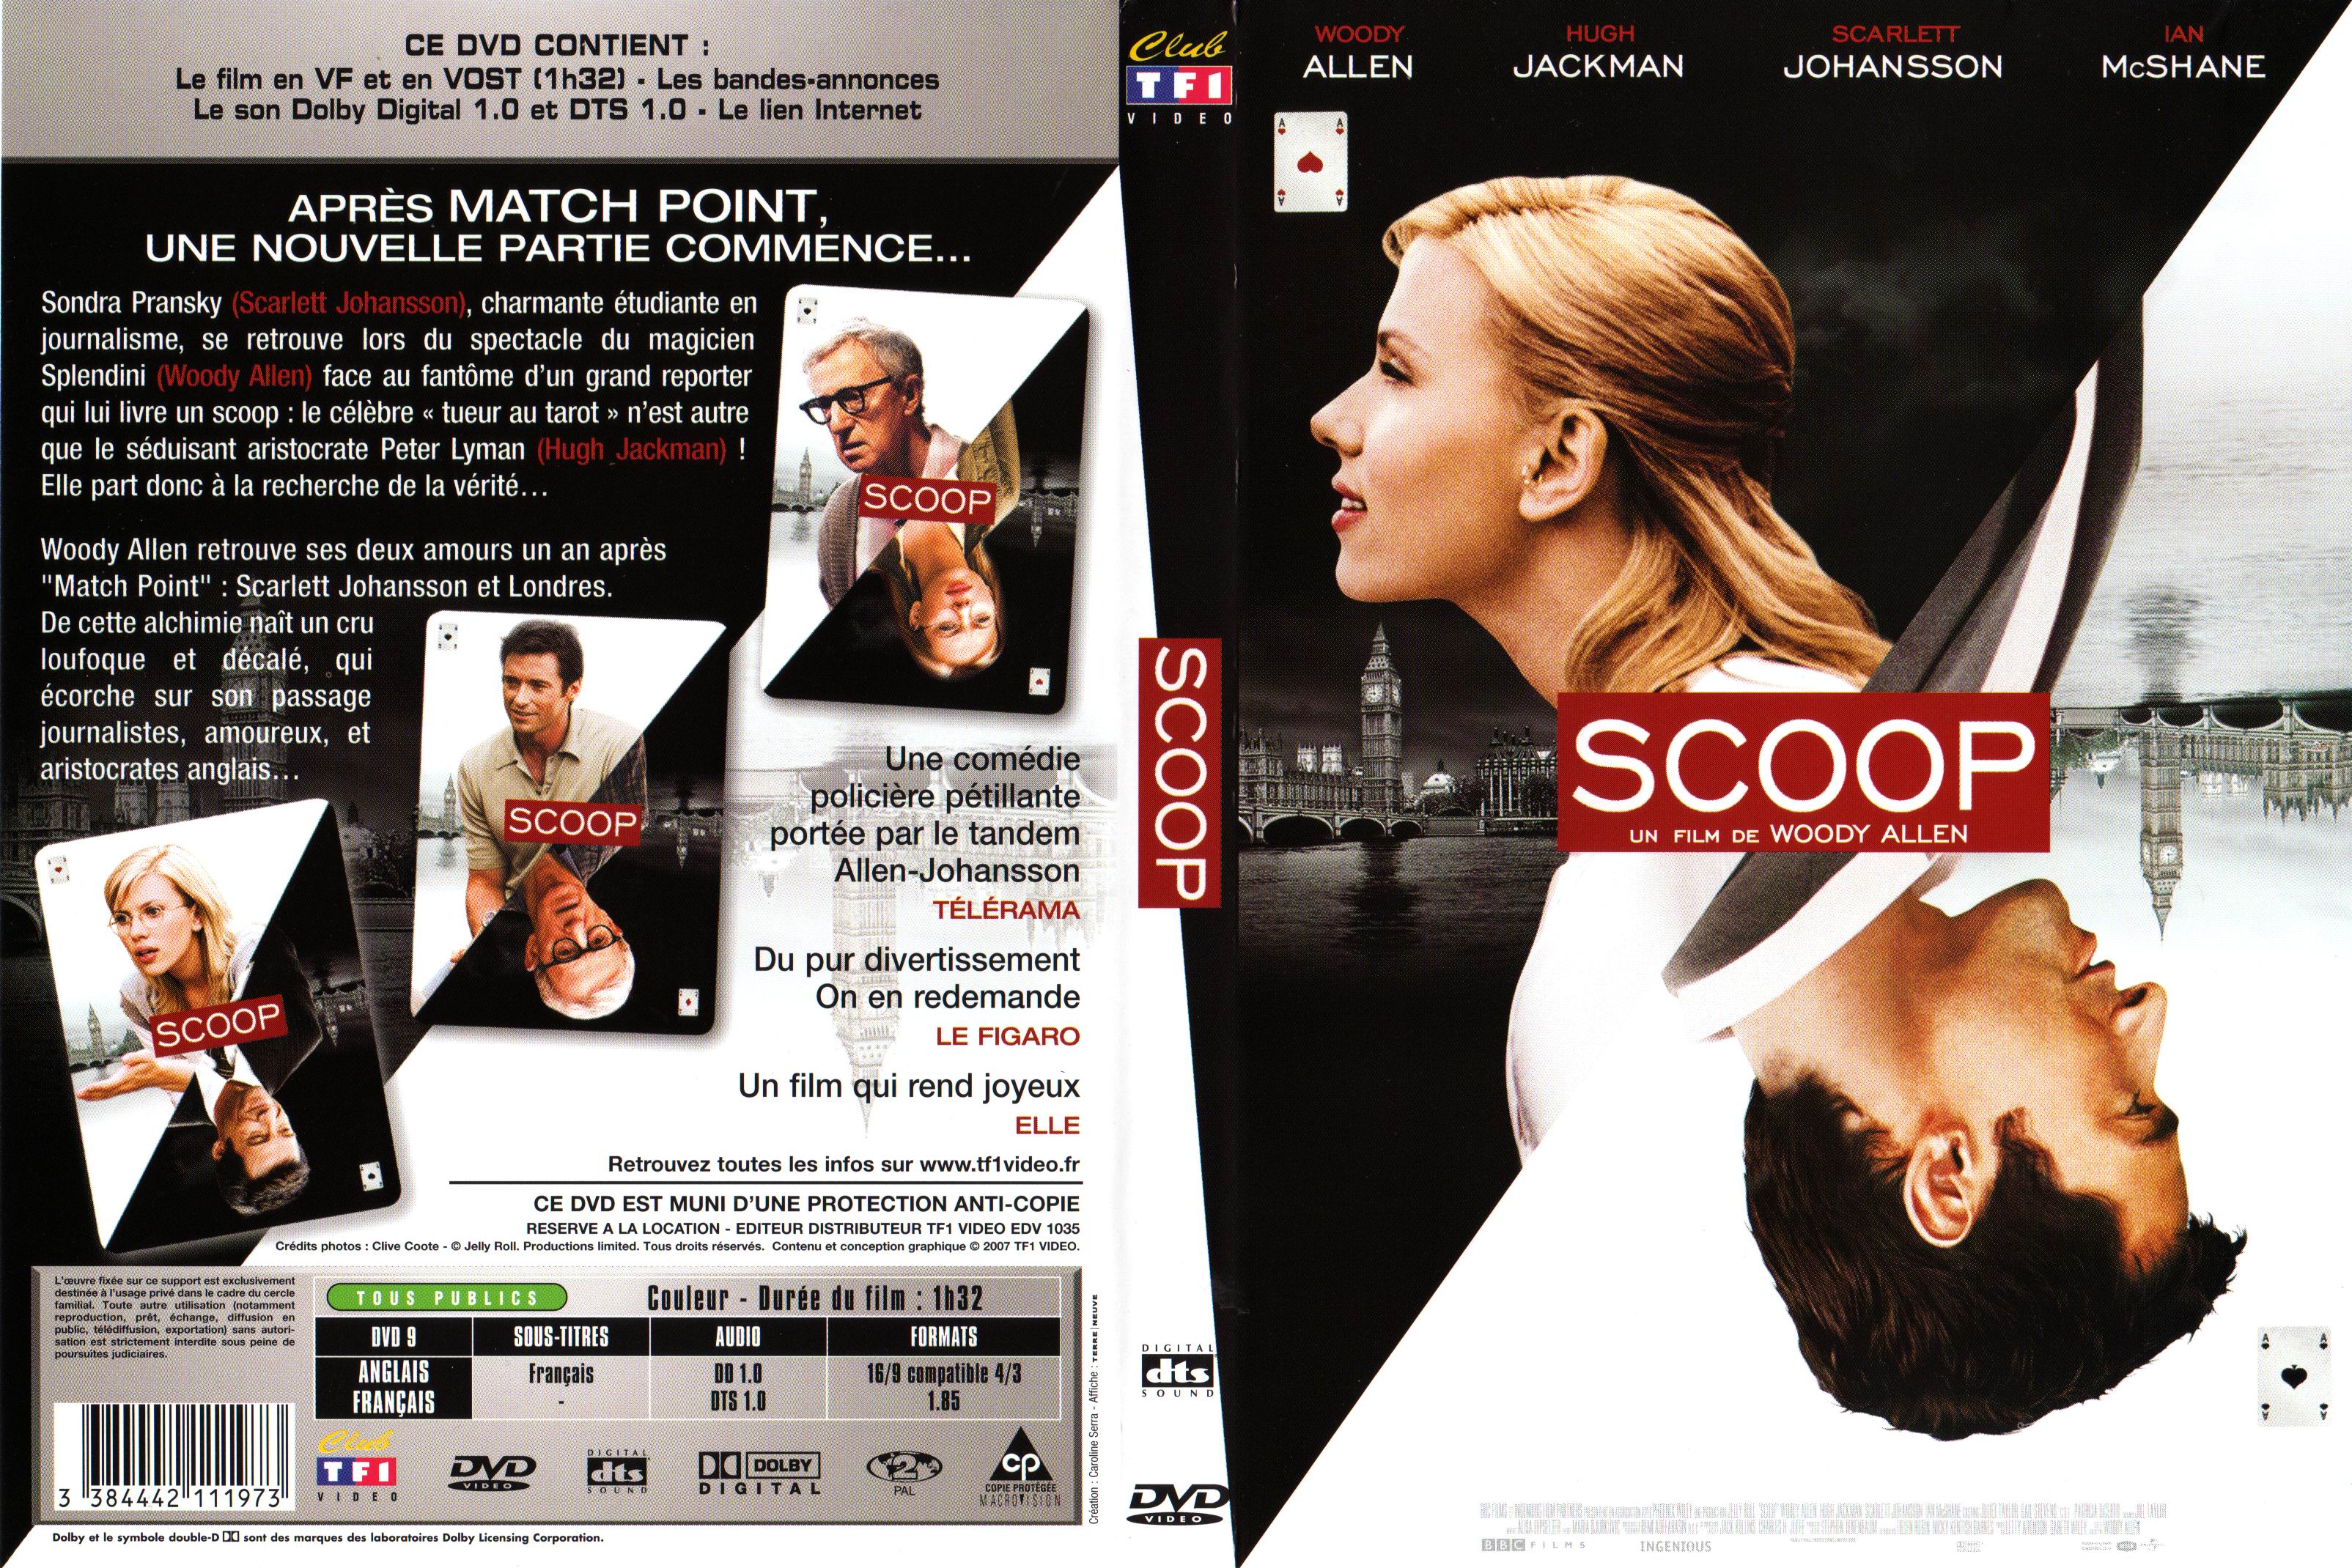 Jaquette DVD Scoop v2